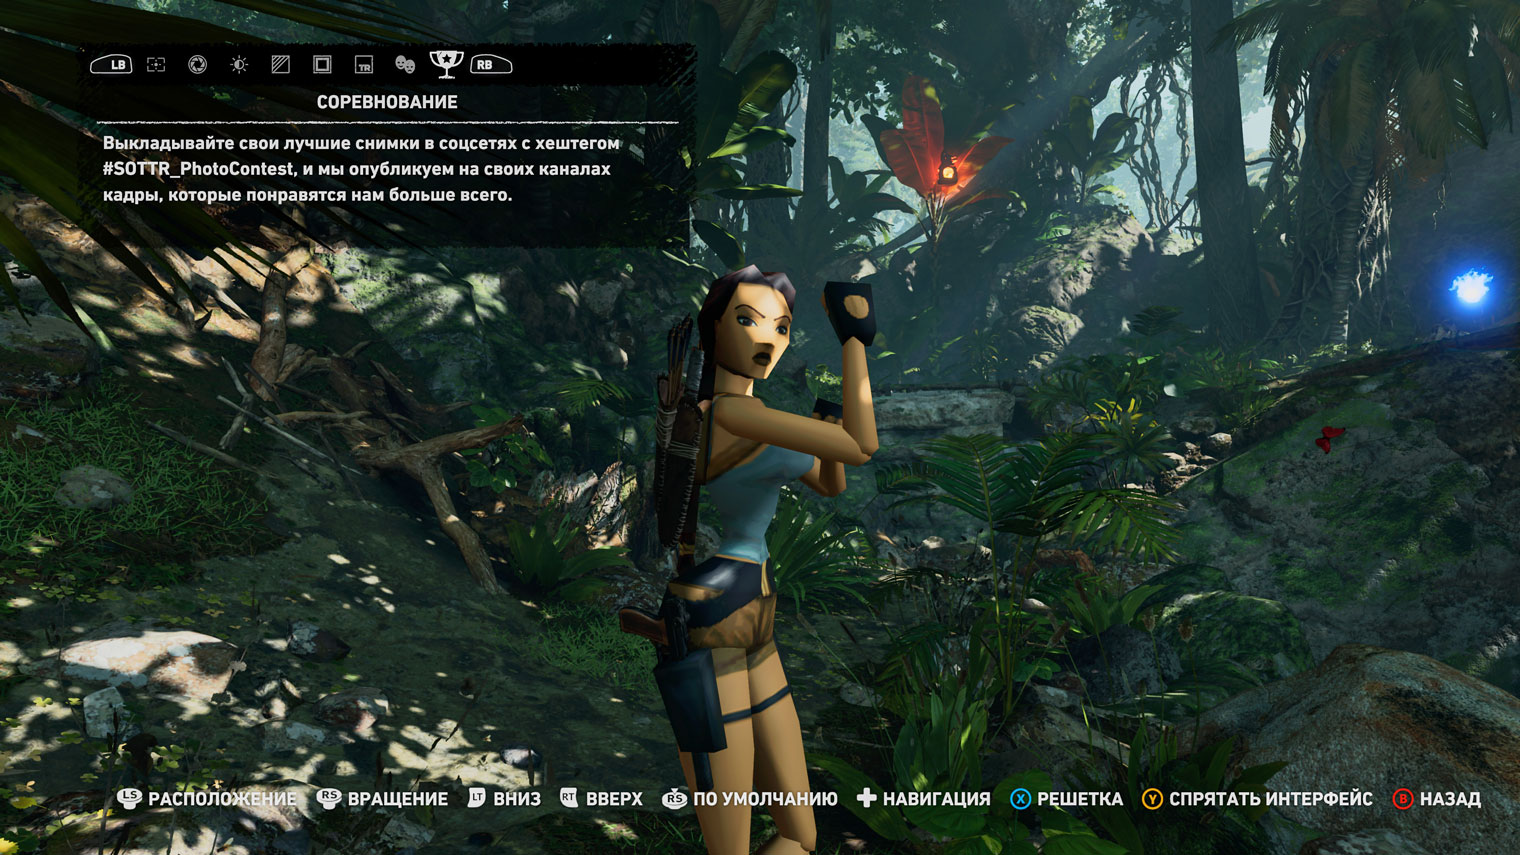 В Shadow of the Tomb Raider нужный хештег указан прямо в фоторежиме, чтобы люди не забывали ставить его в публикациях. Кадр: Square Enix, Crystal Dynamics